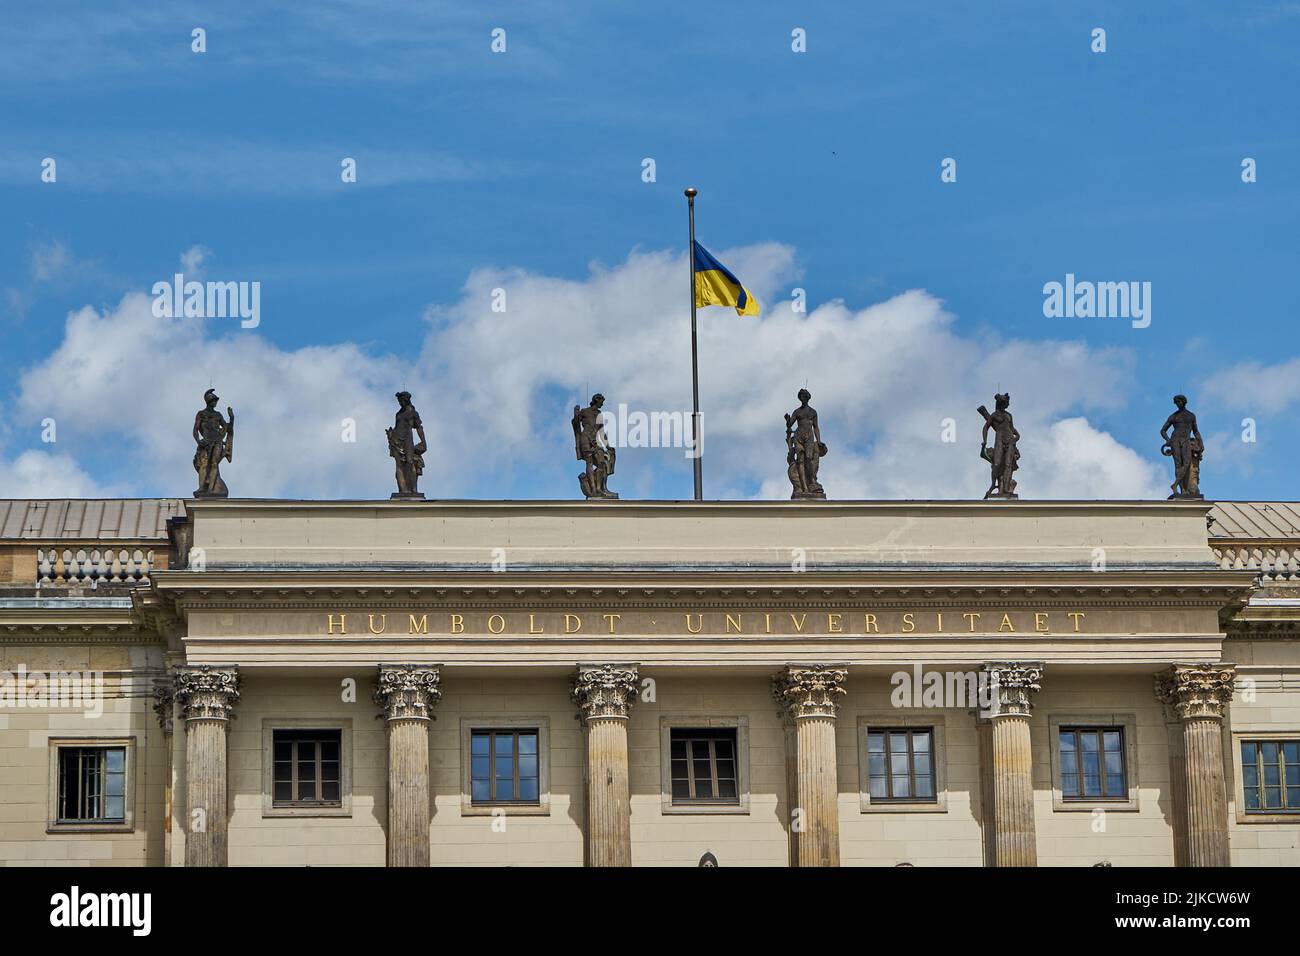 Humboldt Universität, Hauptgebäude, Ausschnitt der Fassade, mit Flagge der Ukraine, Unter den Linden, Berlin Mitte, Berlin, Deutschland Stock Photo